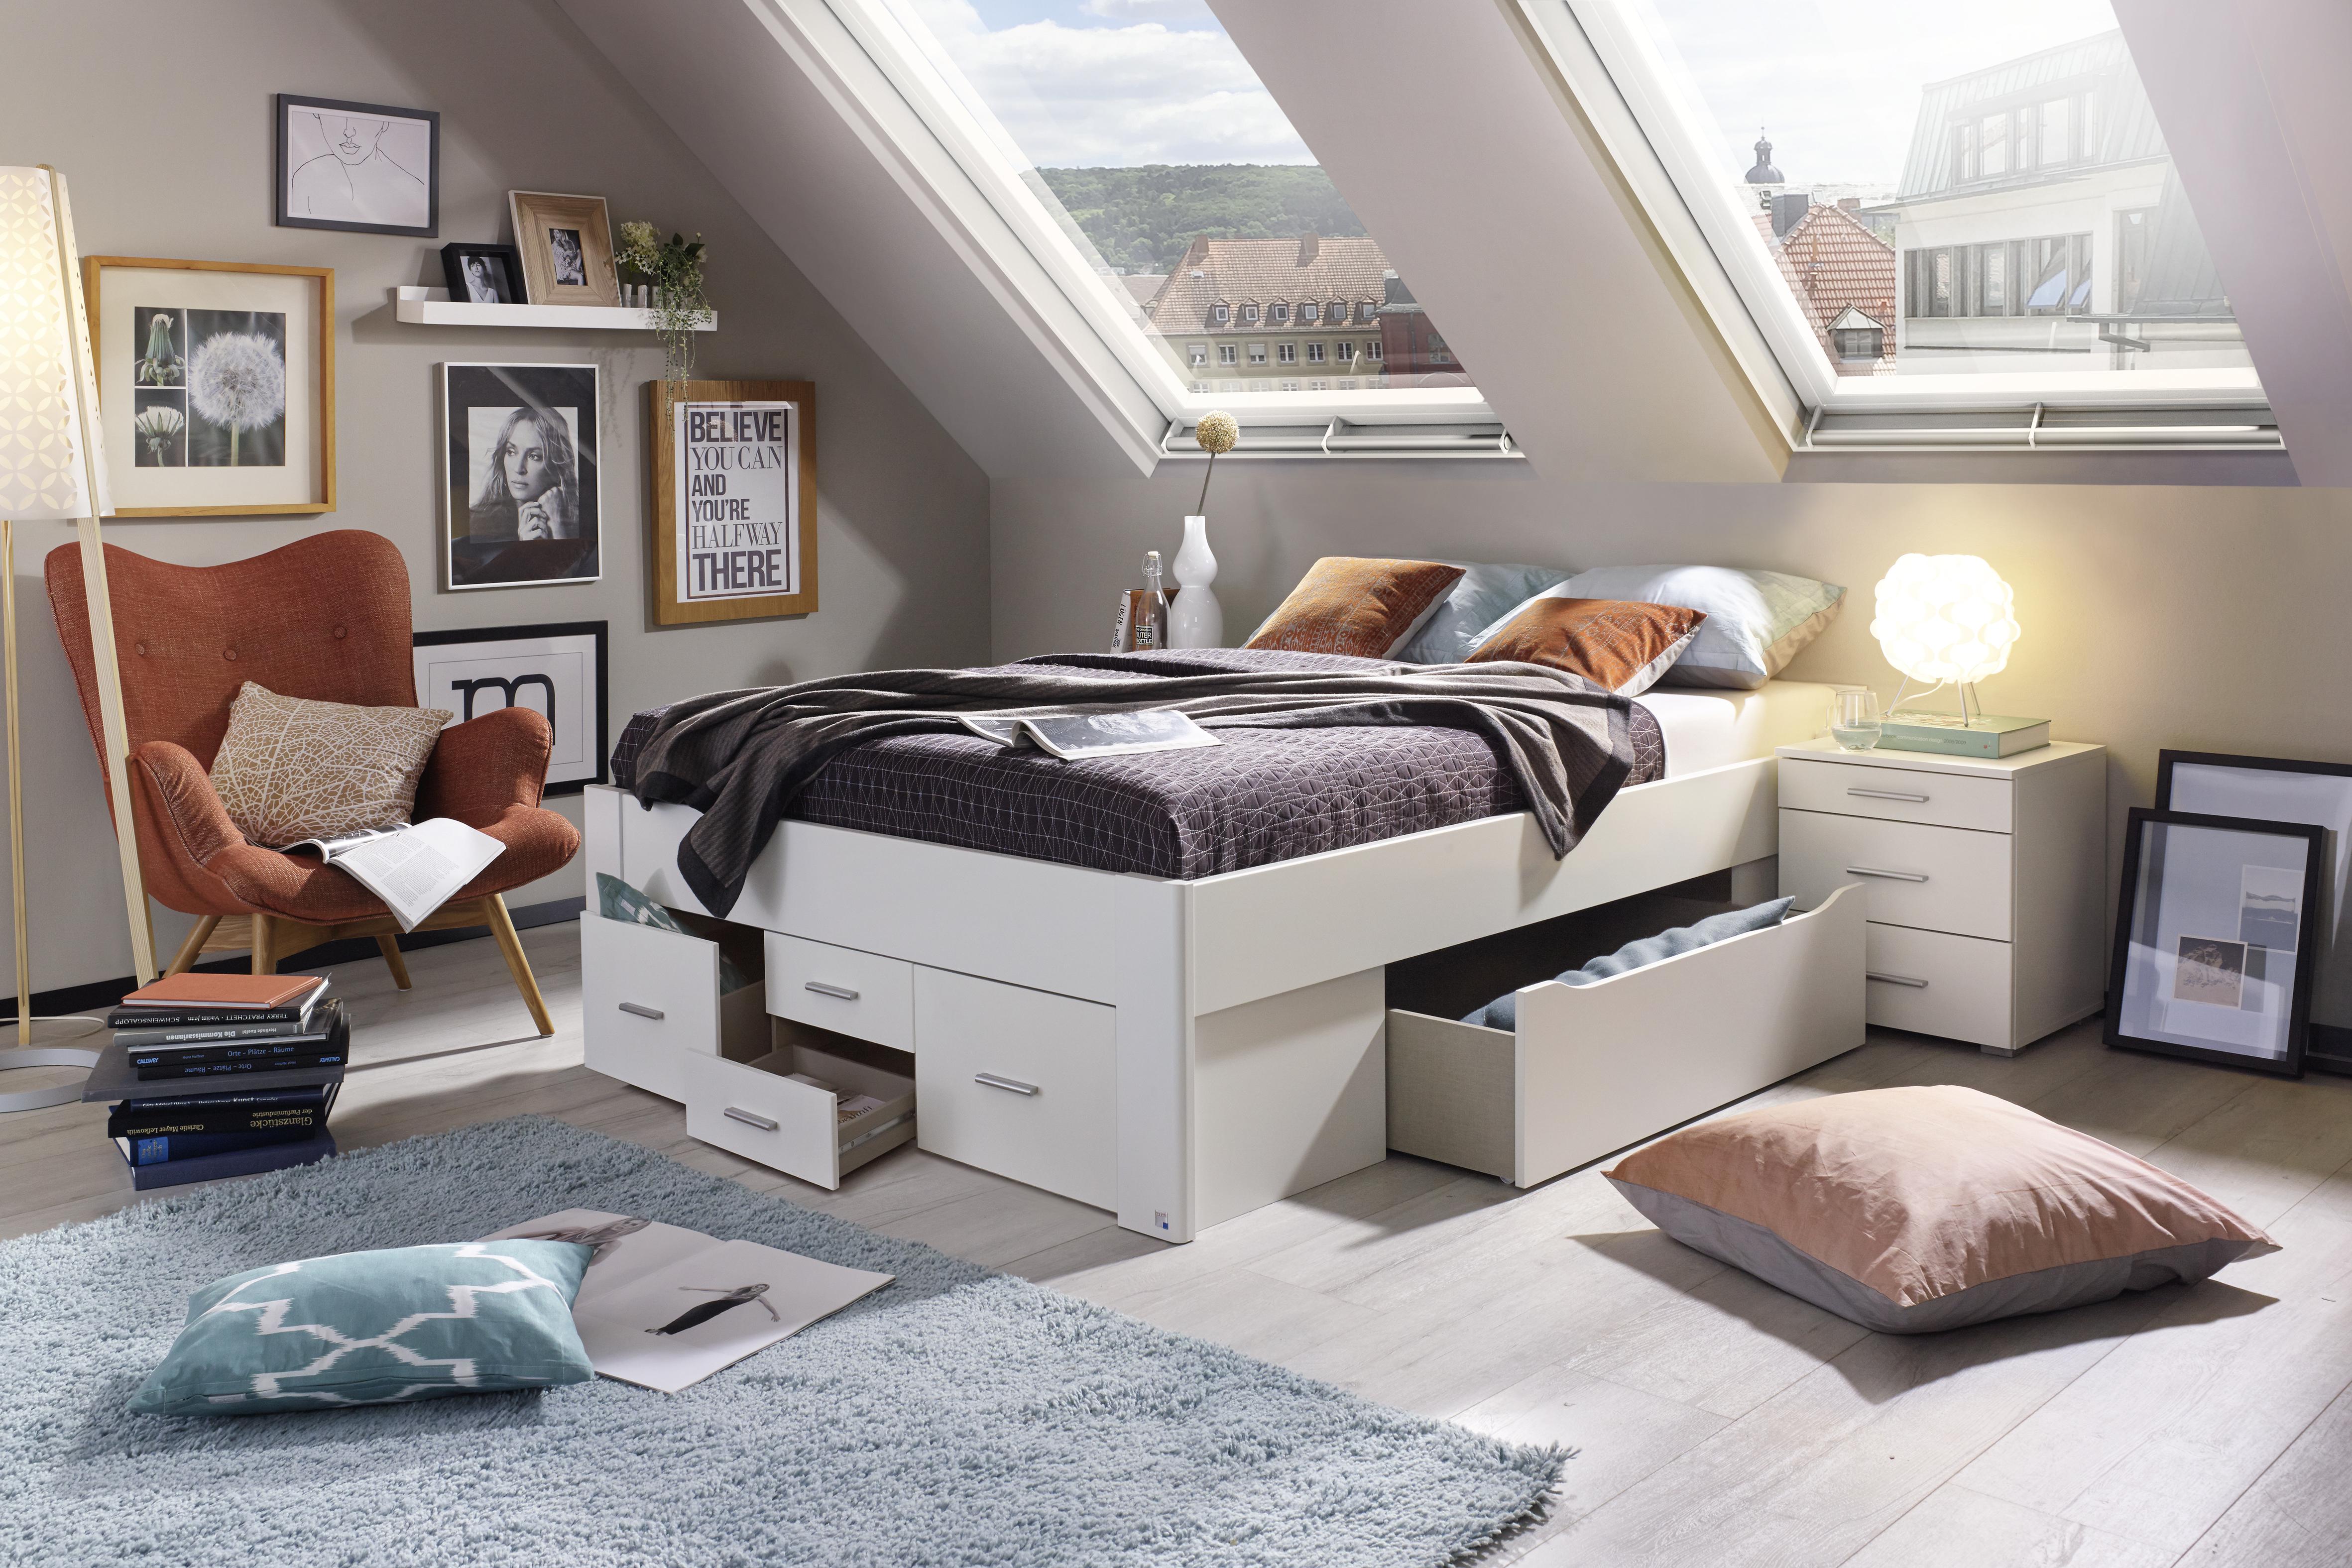 Ein Bett mit Schubladen bietet Stauraum für Bettzeug, Kissen und Klamotten und hilft dabei, Ordnung zu halten. 